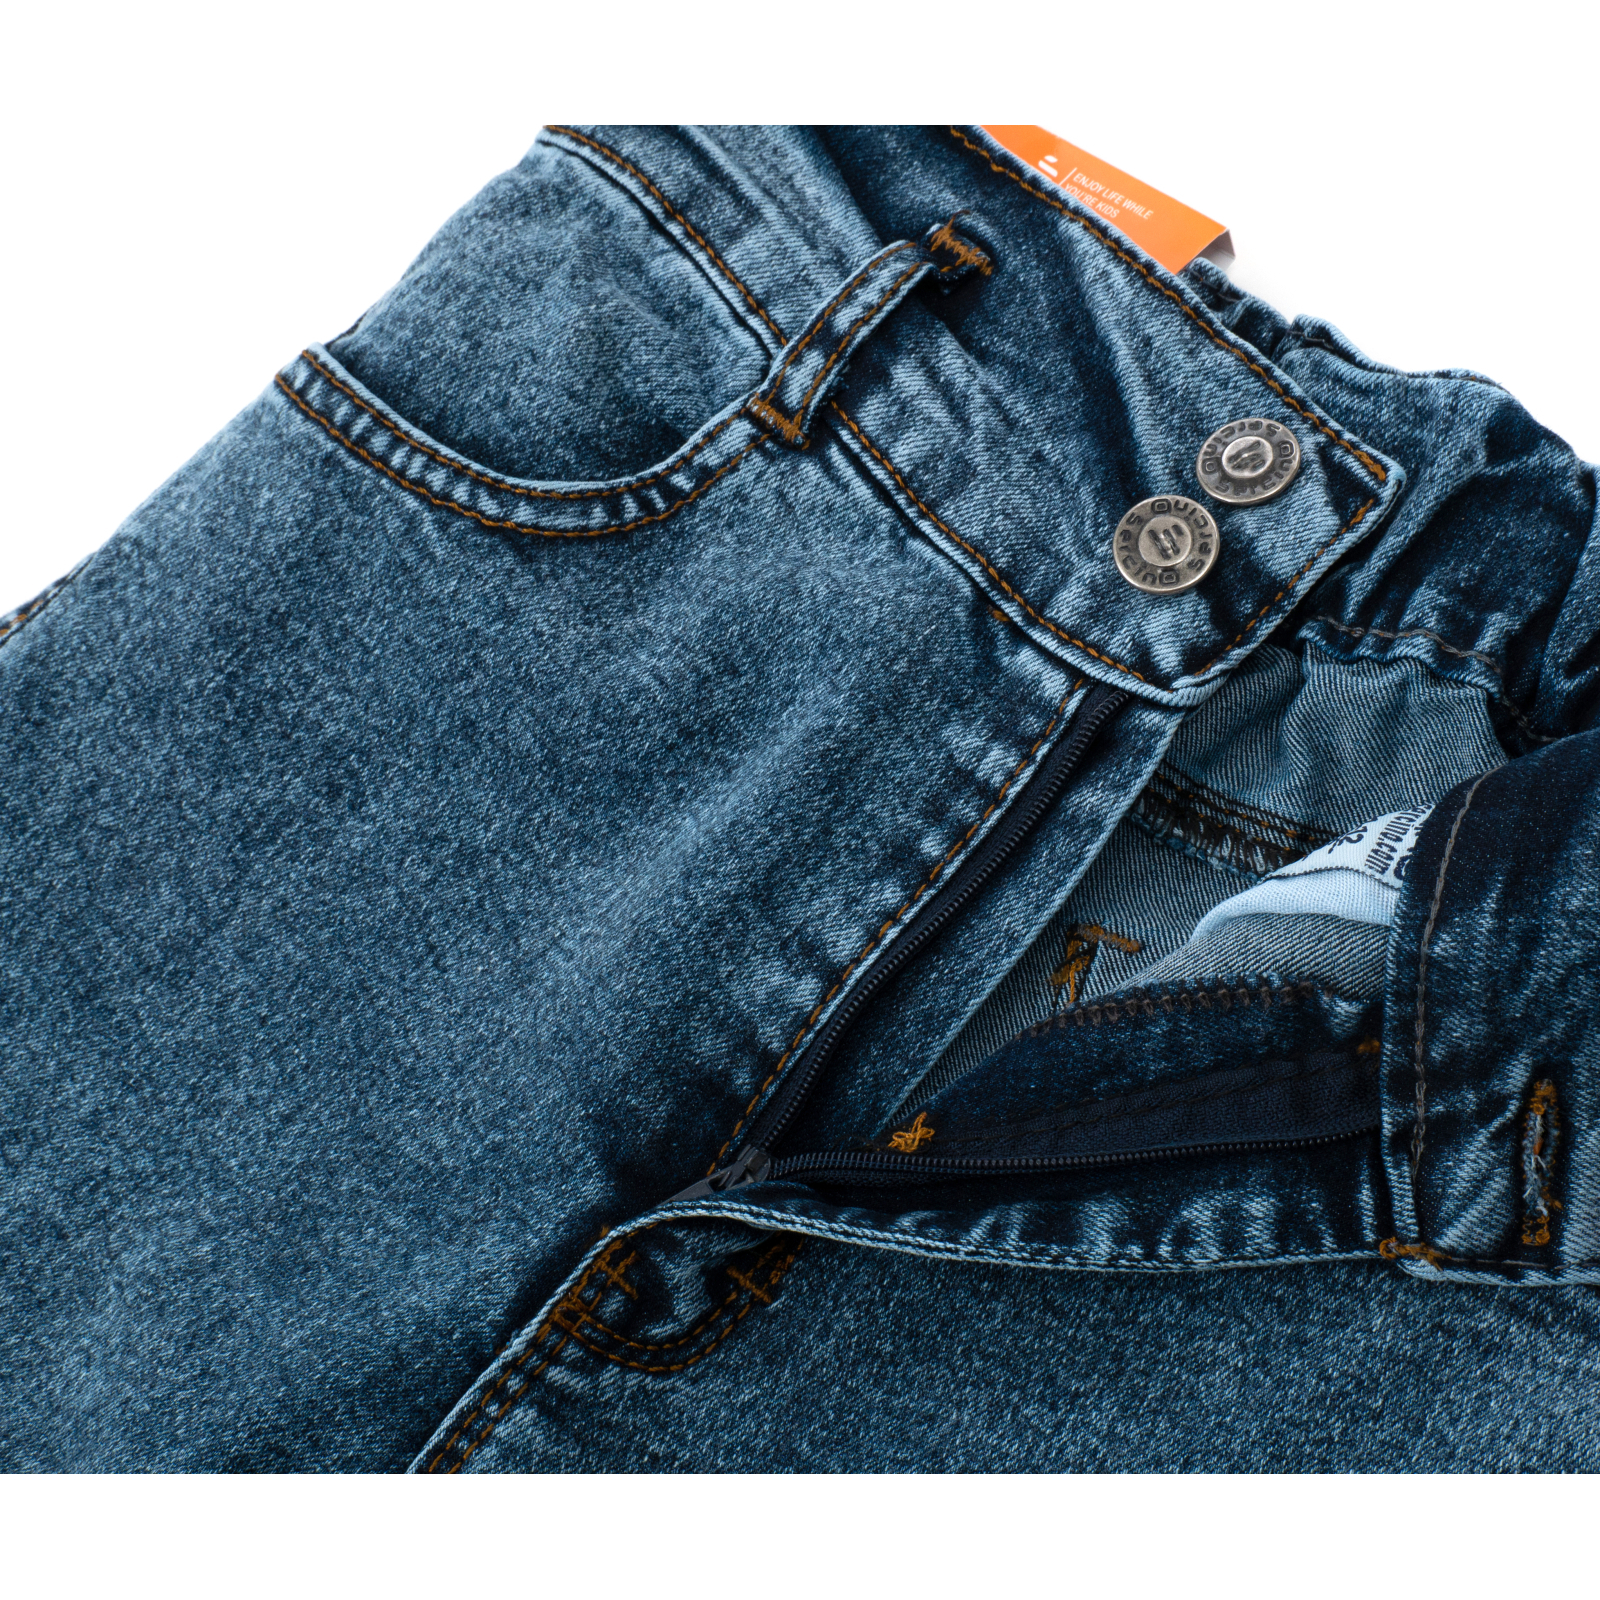 Джинсы Sercino с карманами (59654-164G-blue) изображение 6